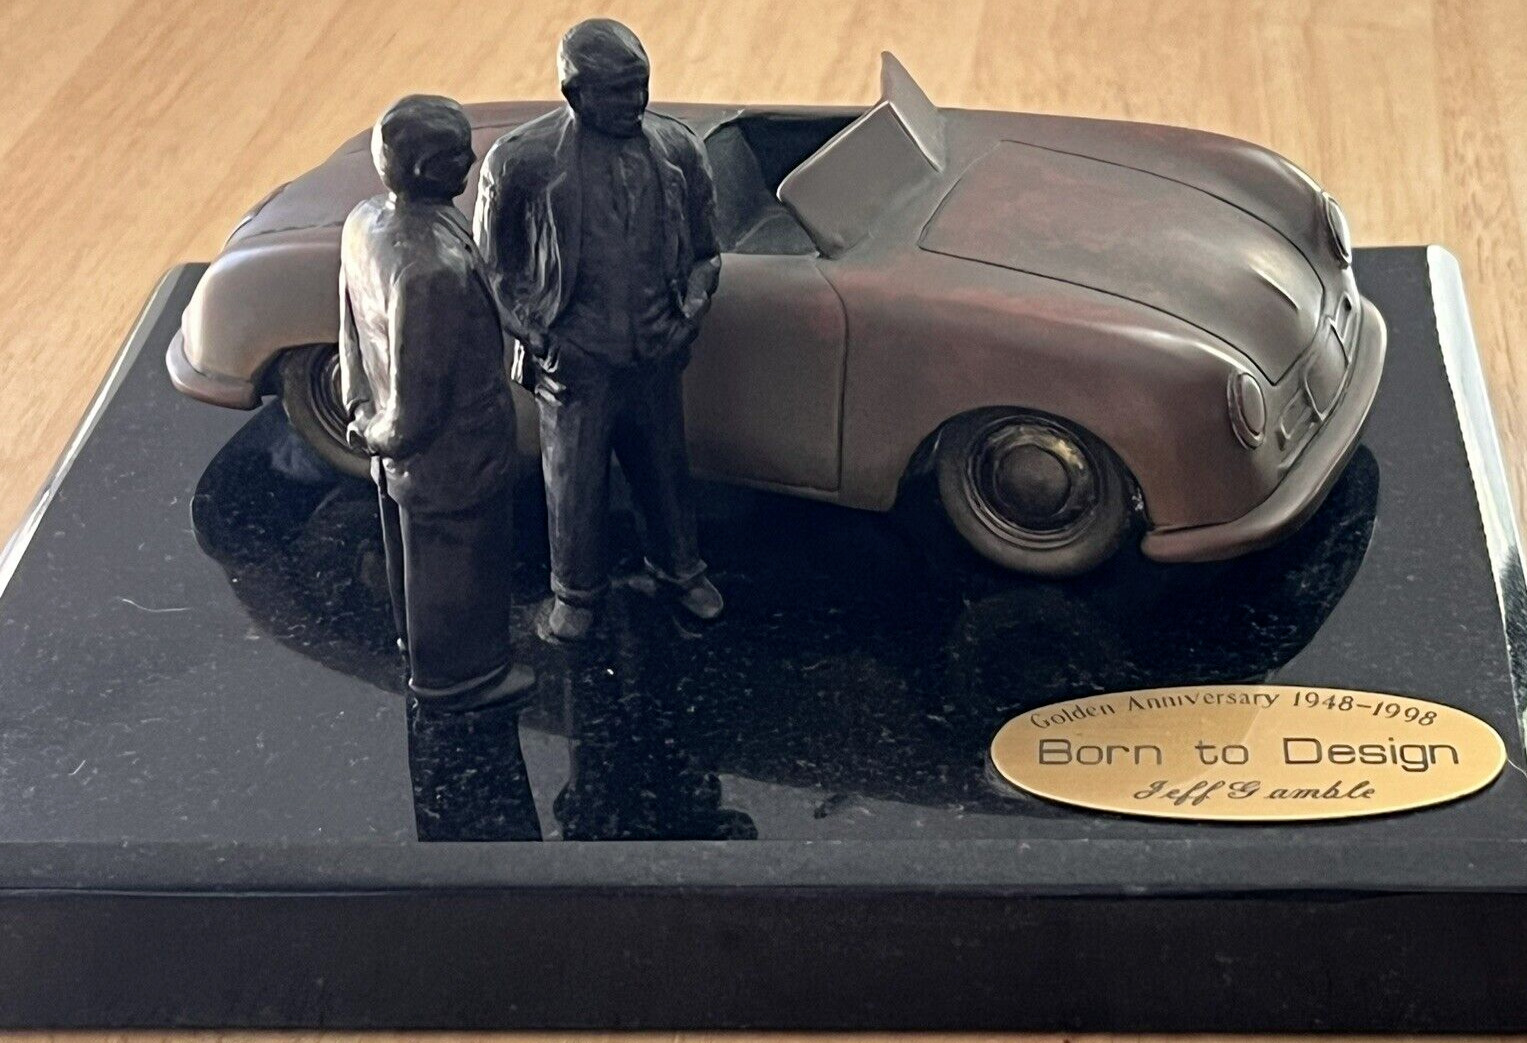 Dr. & Professor Porsche-Gmund Roadster Anniversary Design 1948-1998 Jeff Gamble